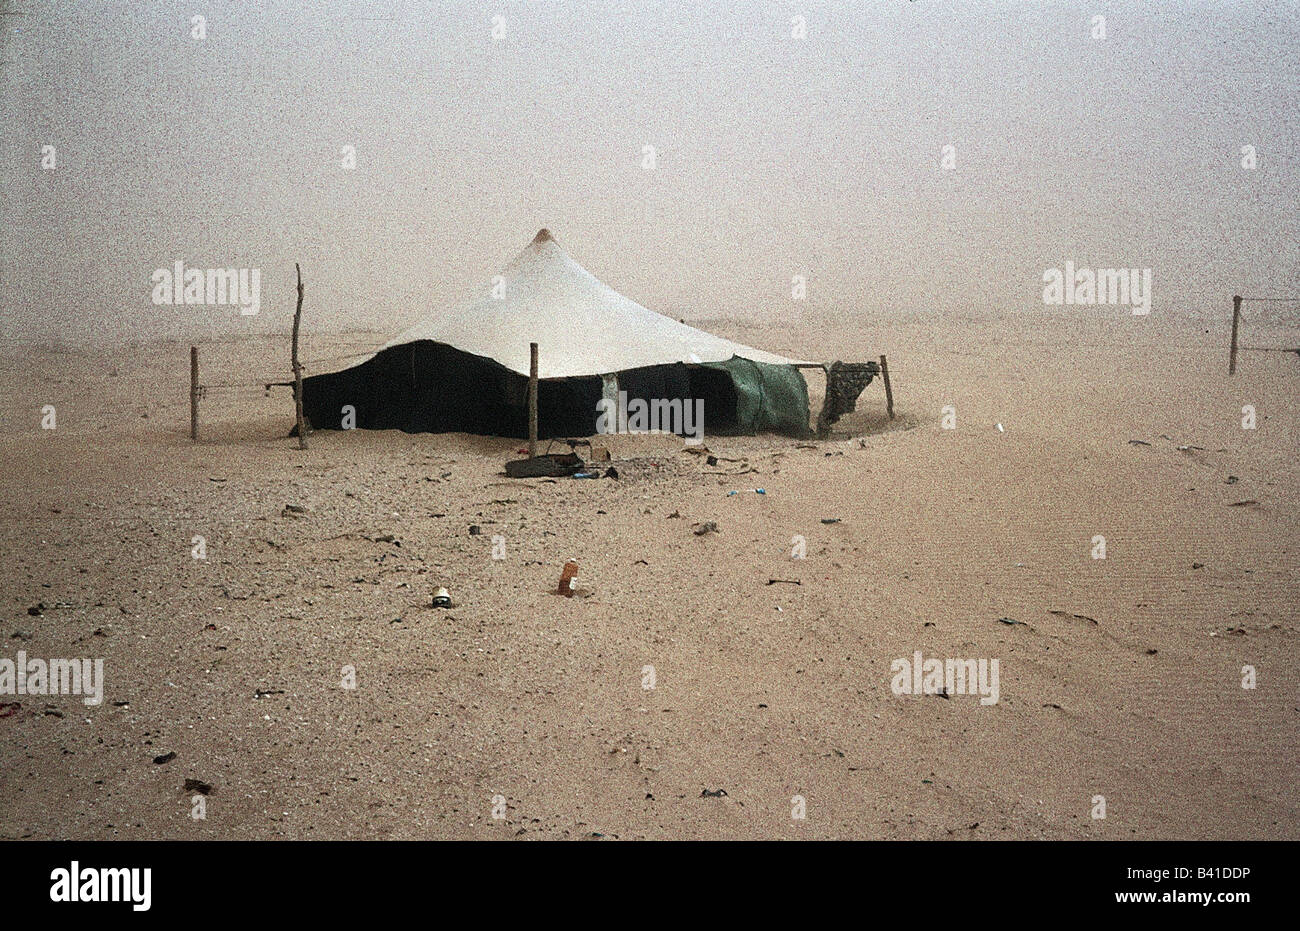 Geografia / viaggio, Mauritania, tenda beduina, deserto durante la tempesta di sabbia, 1972, campo, sabbia, tempesta, beduini, Foto Stock